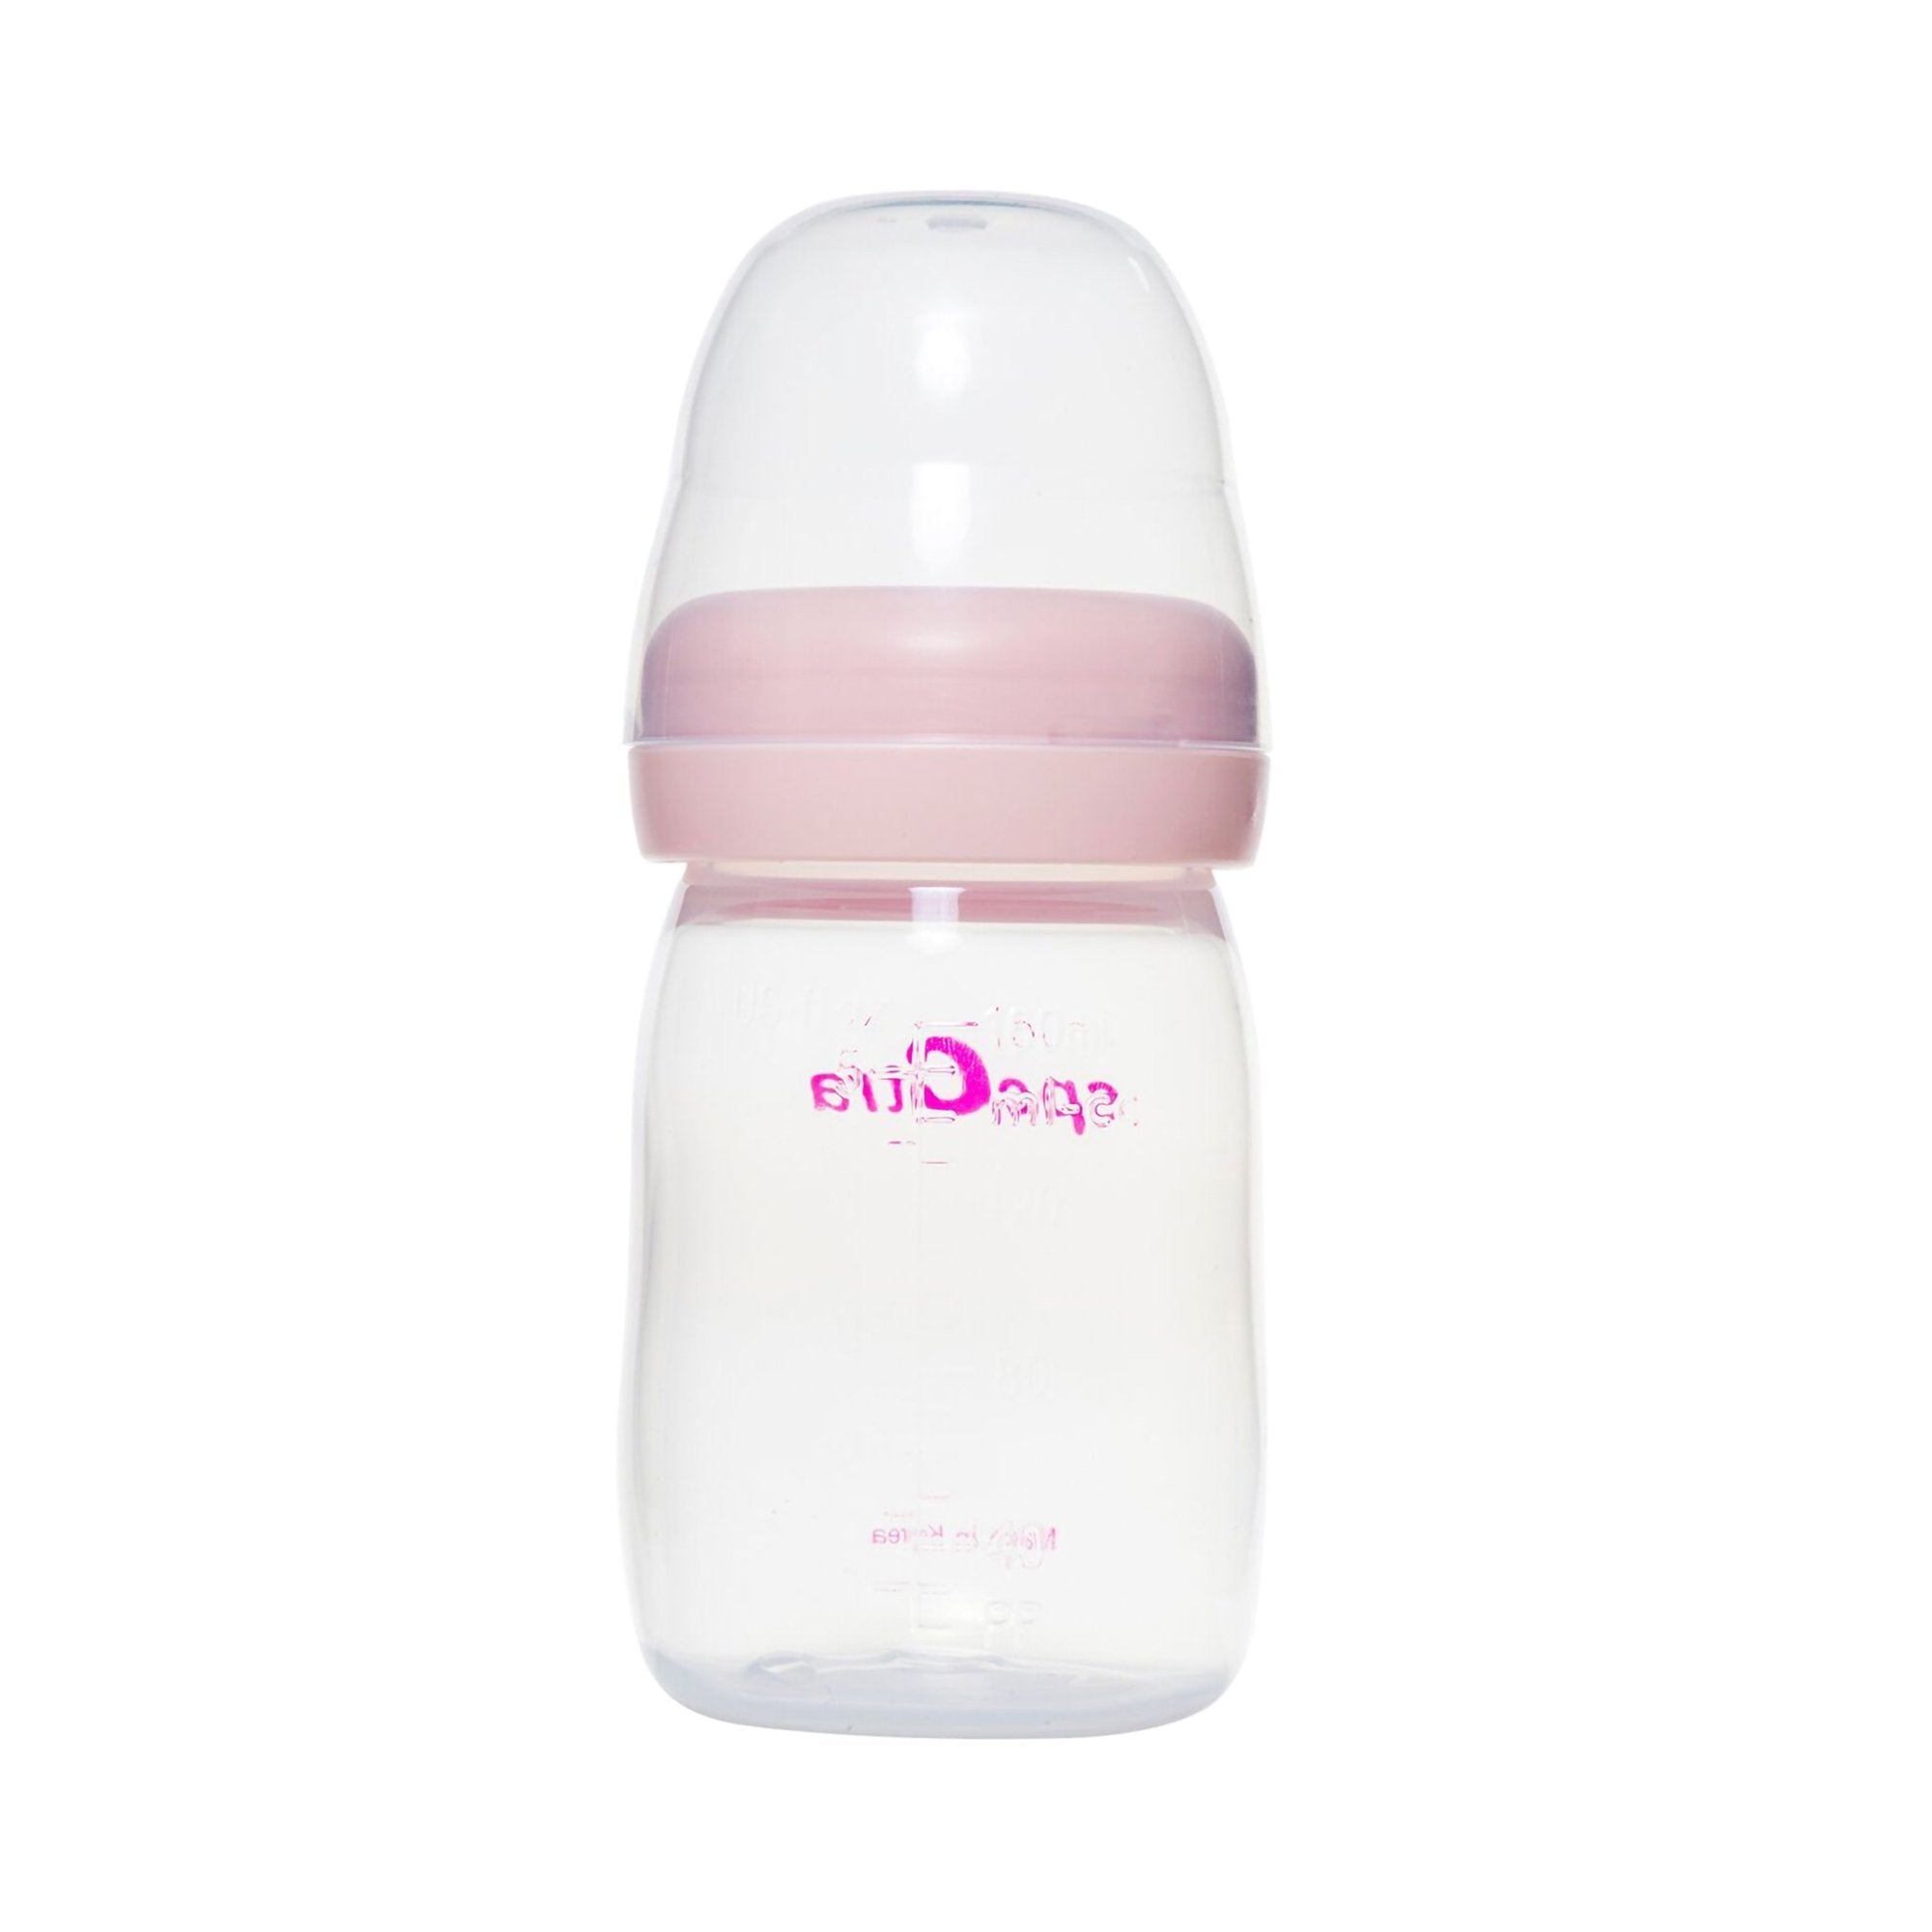 Spectra Baby Bottle, 5 oz. -Each